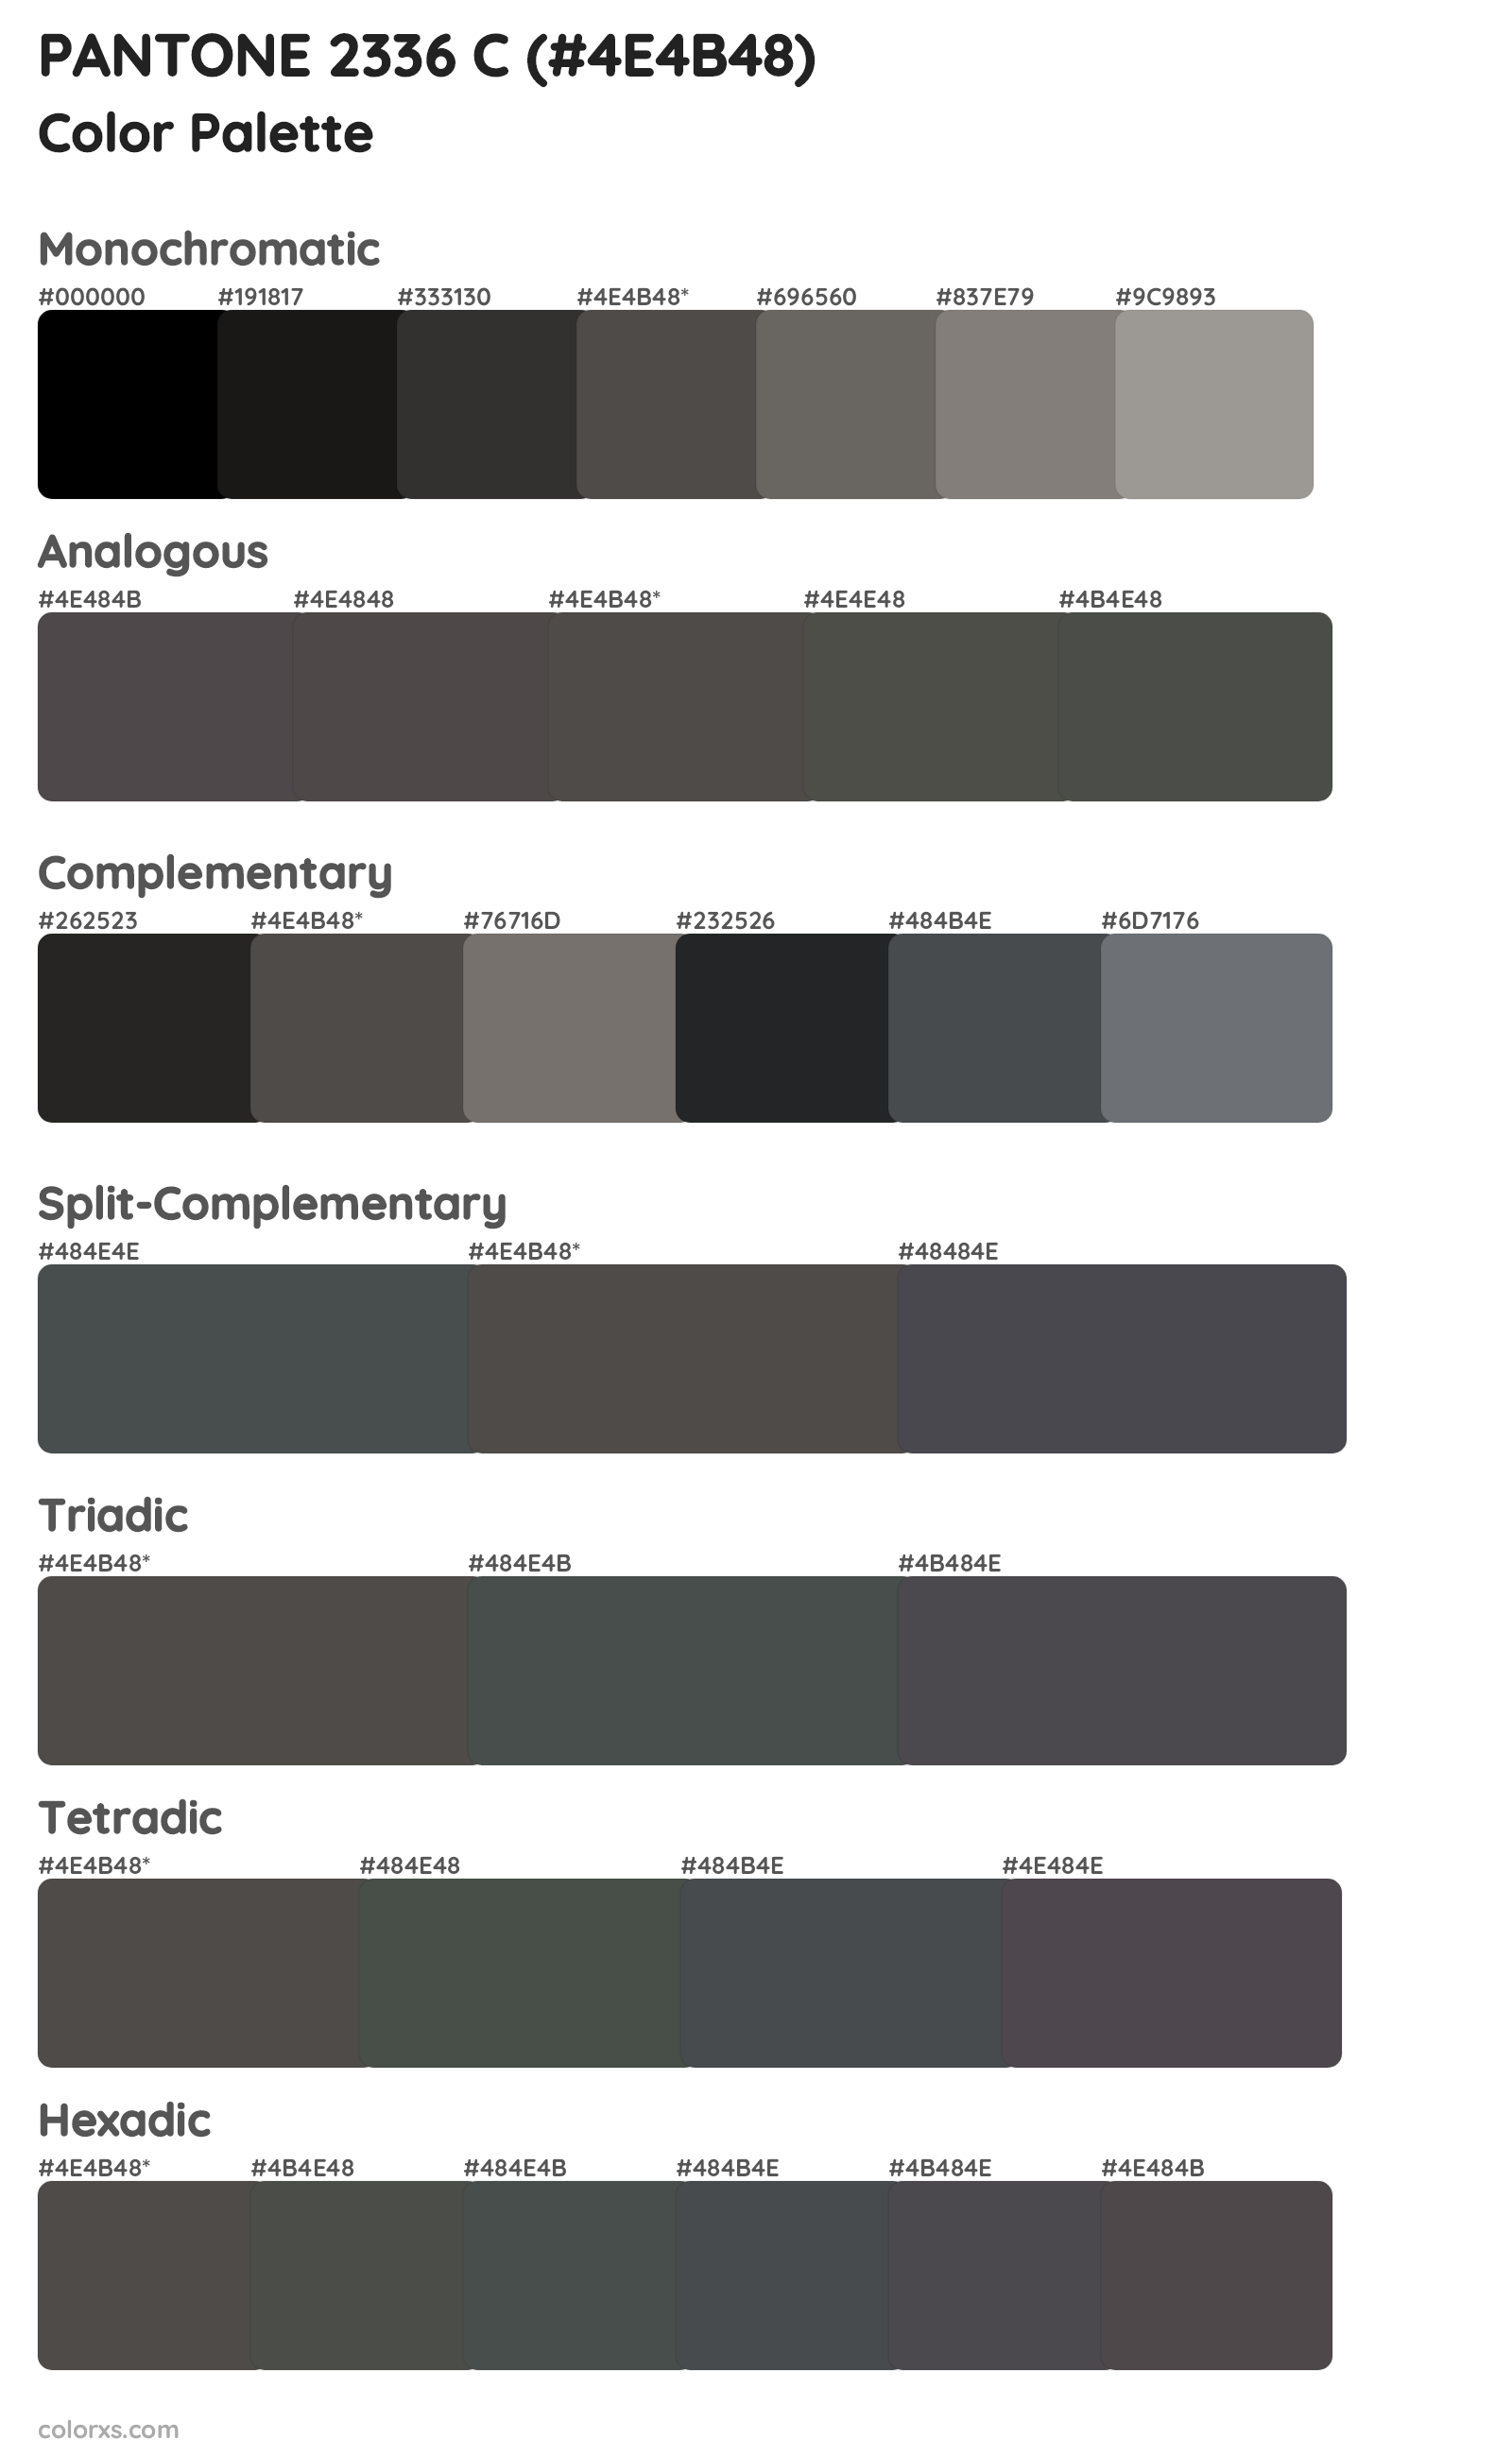 PANTONE 2336 C Color Scheme Palettes